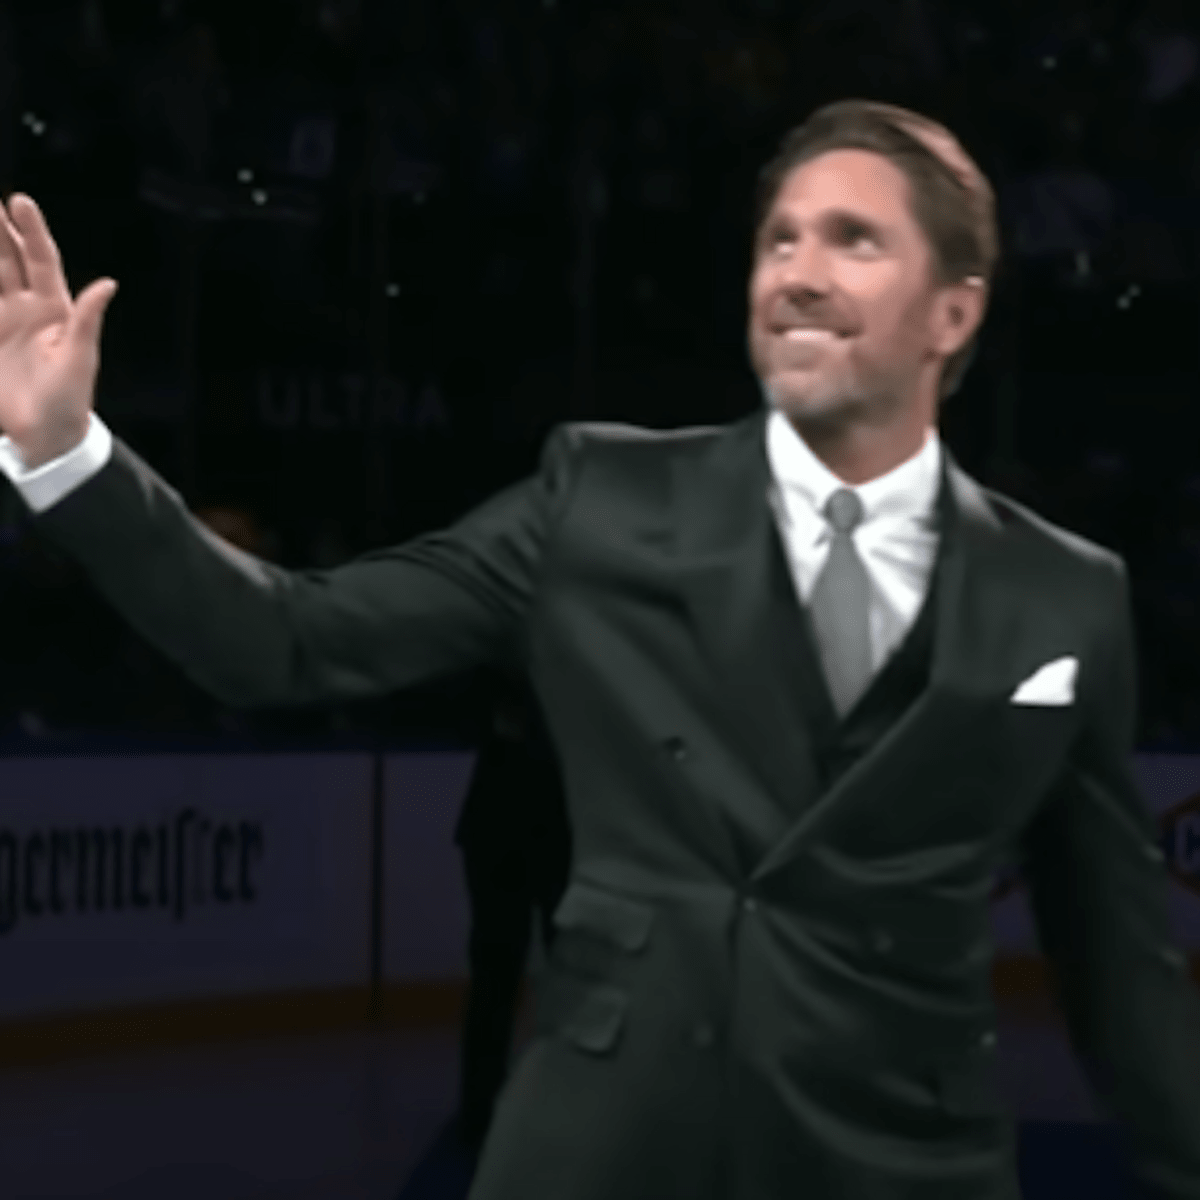 Coronation: Rangers retire Lundqvist's No. 30 in ceremony